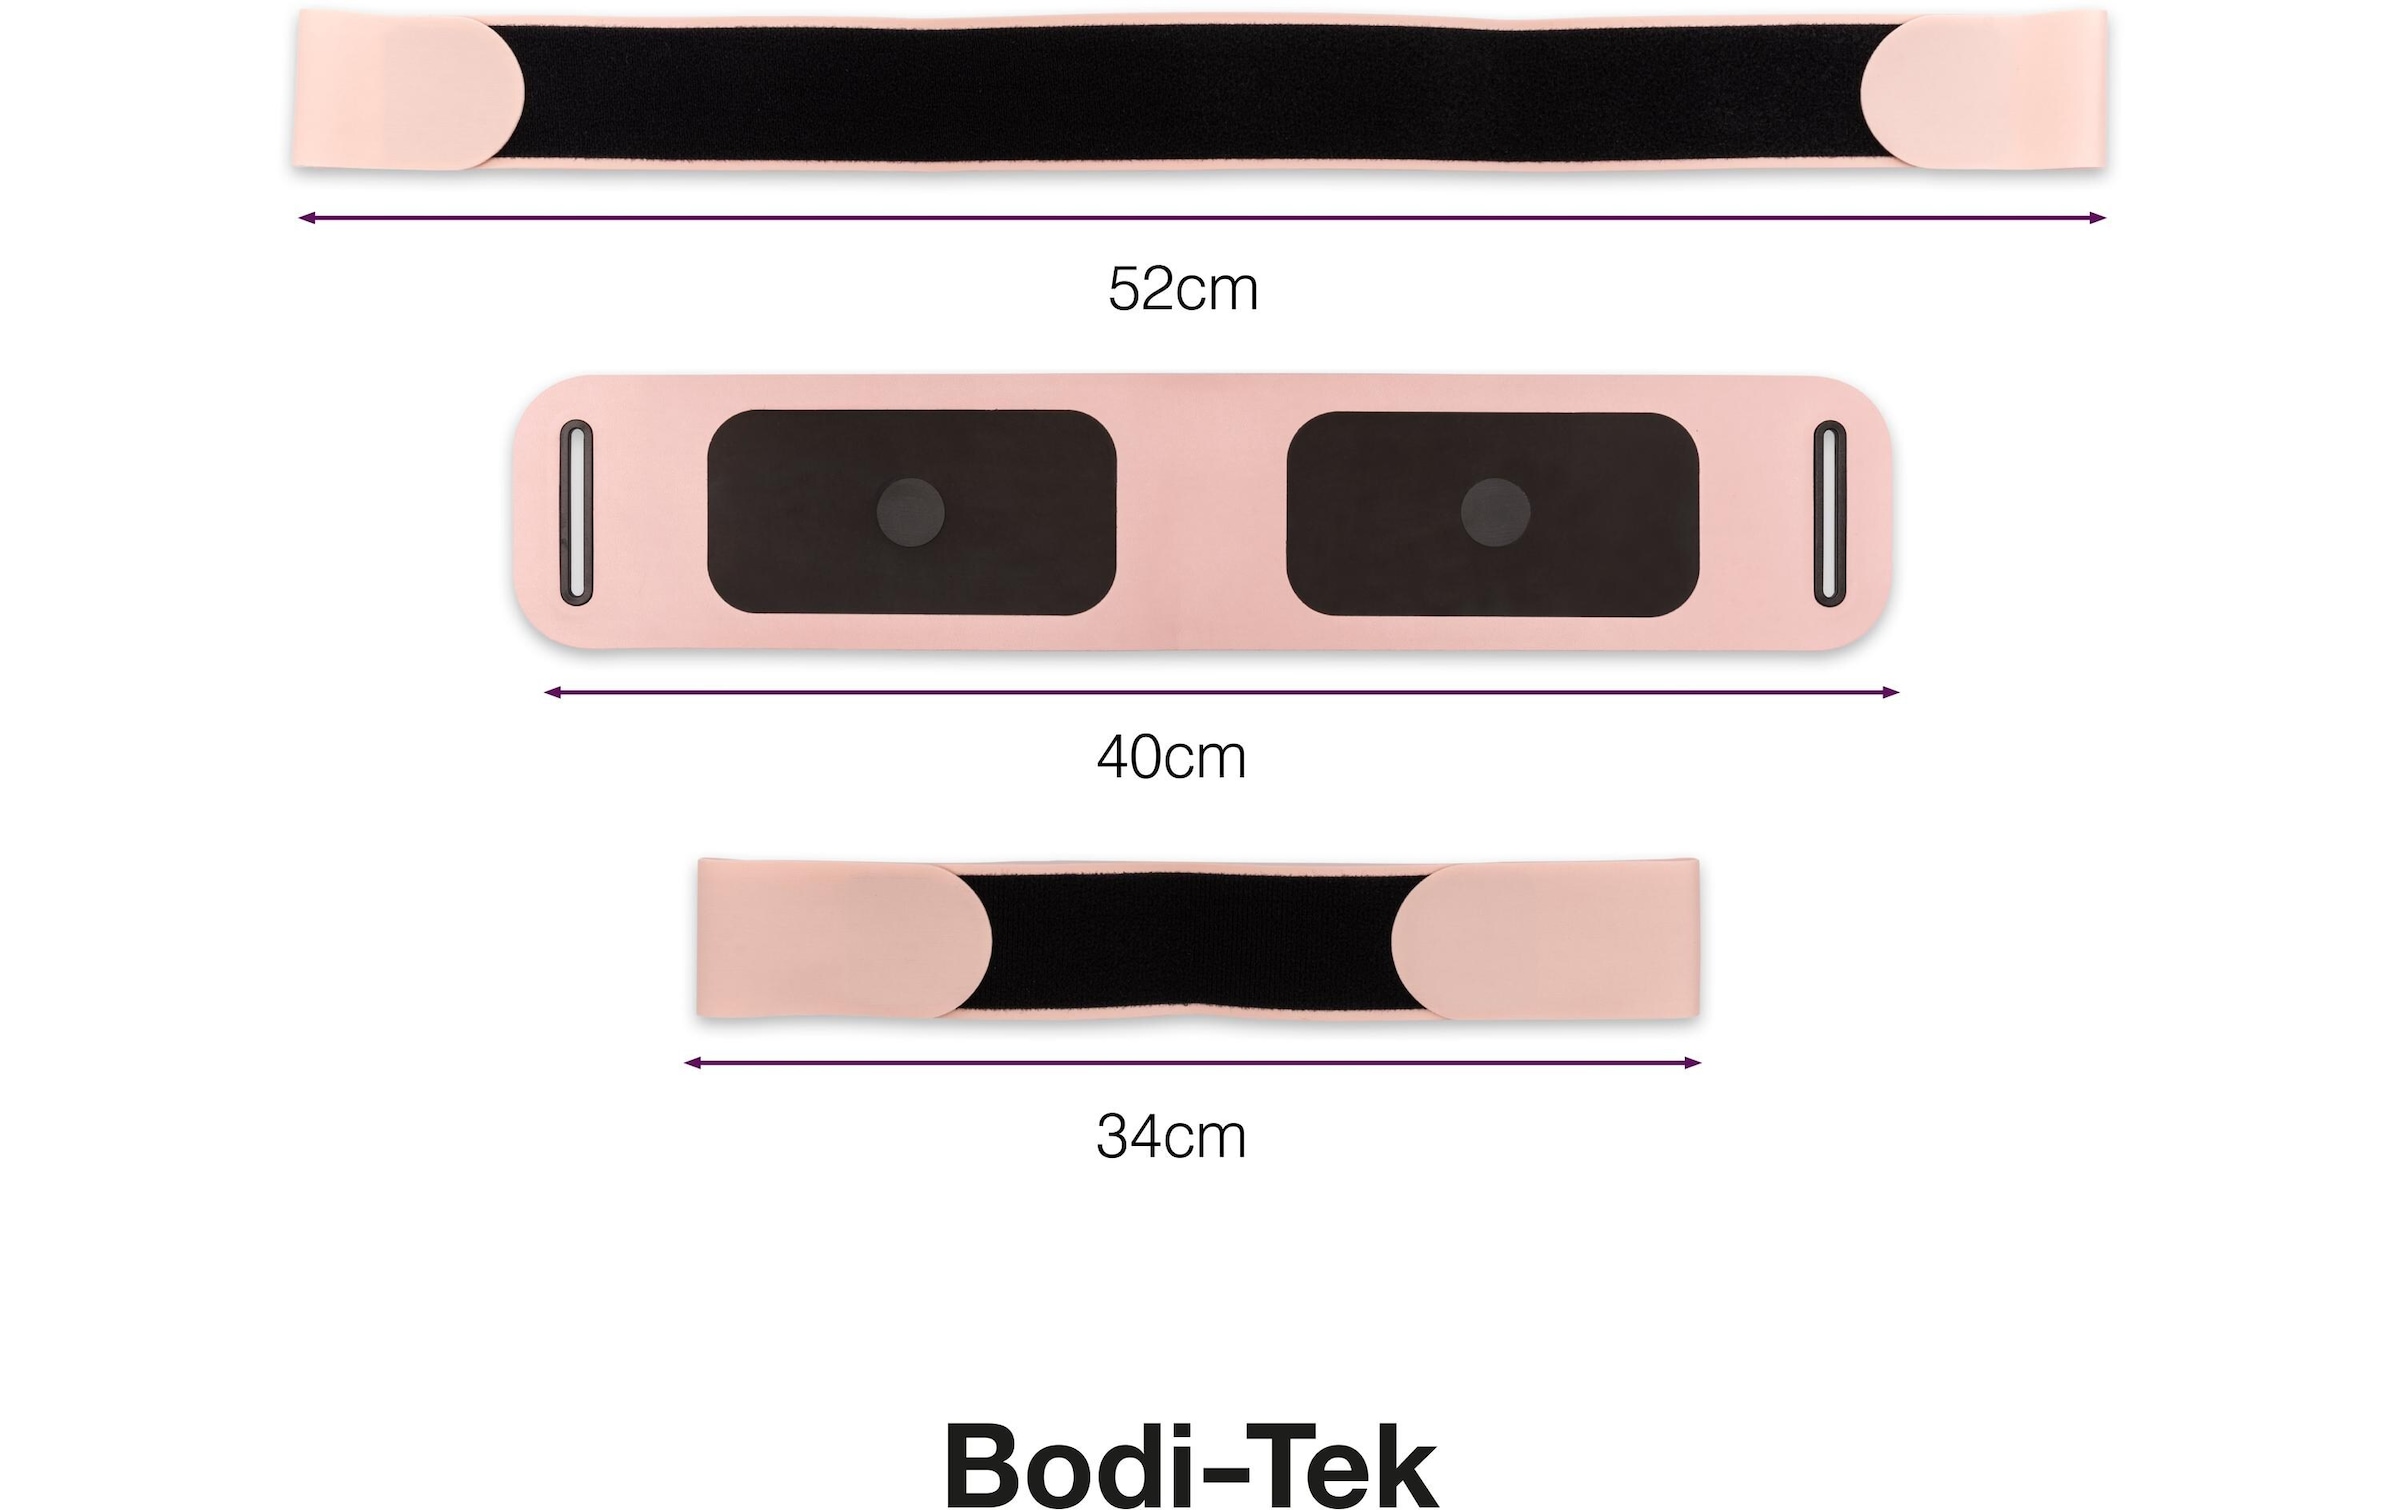 Bodi-Tek EMS-Gerät »Shape and Tone ab Belt toner«